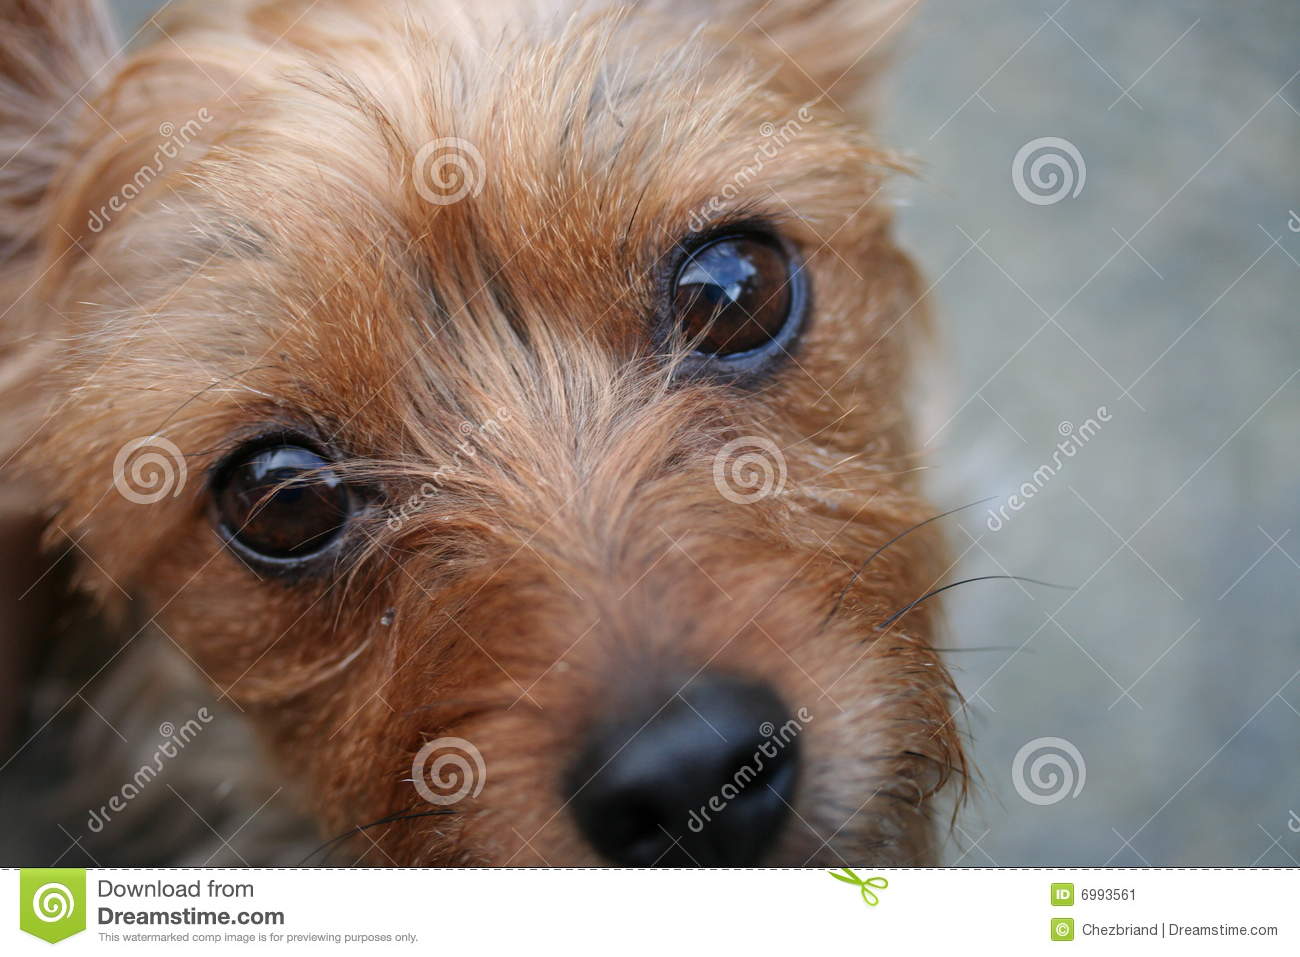 Puppy Dog Eyes Stock Image   Image  6993561